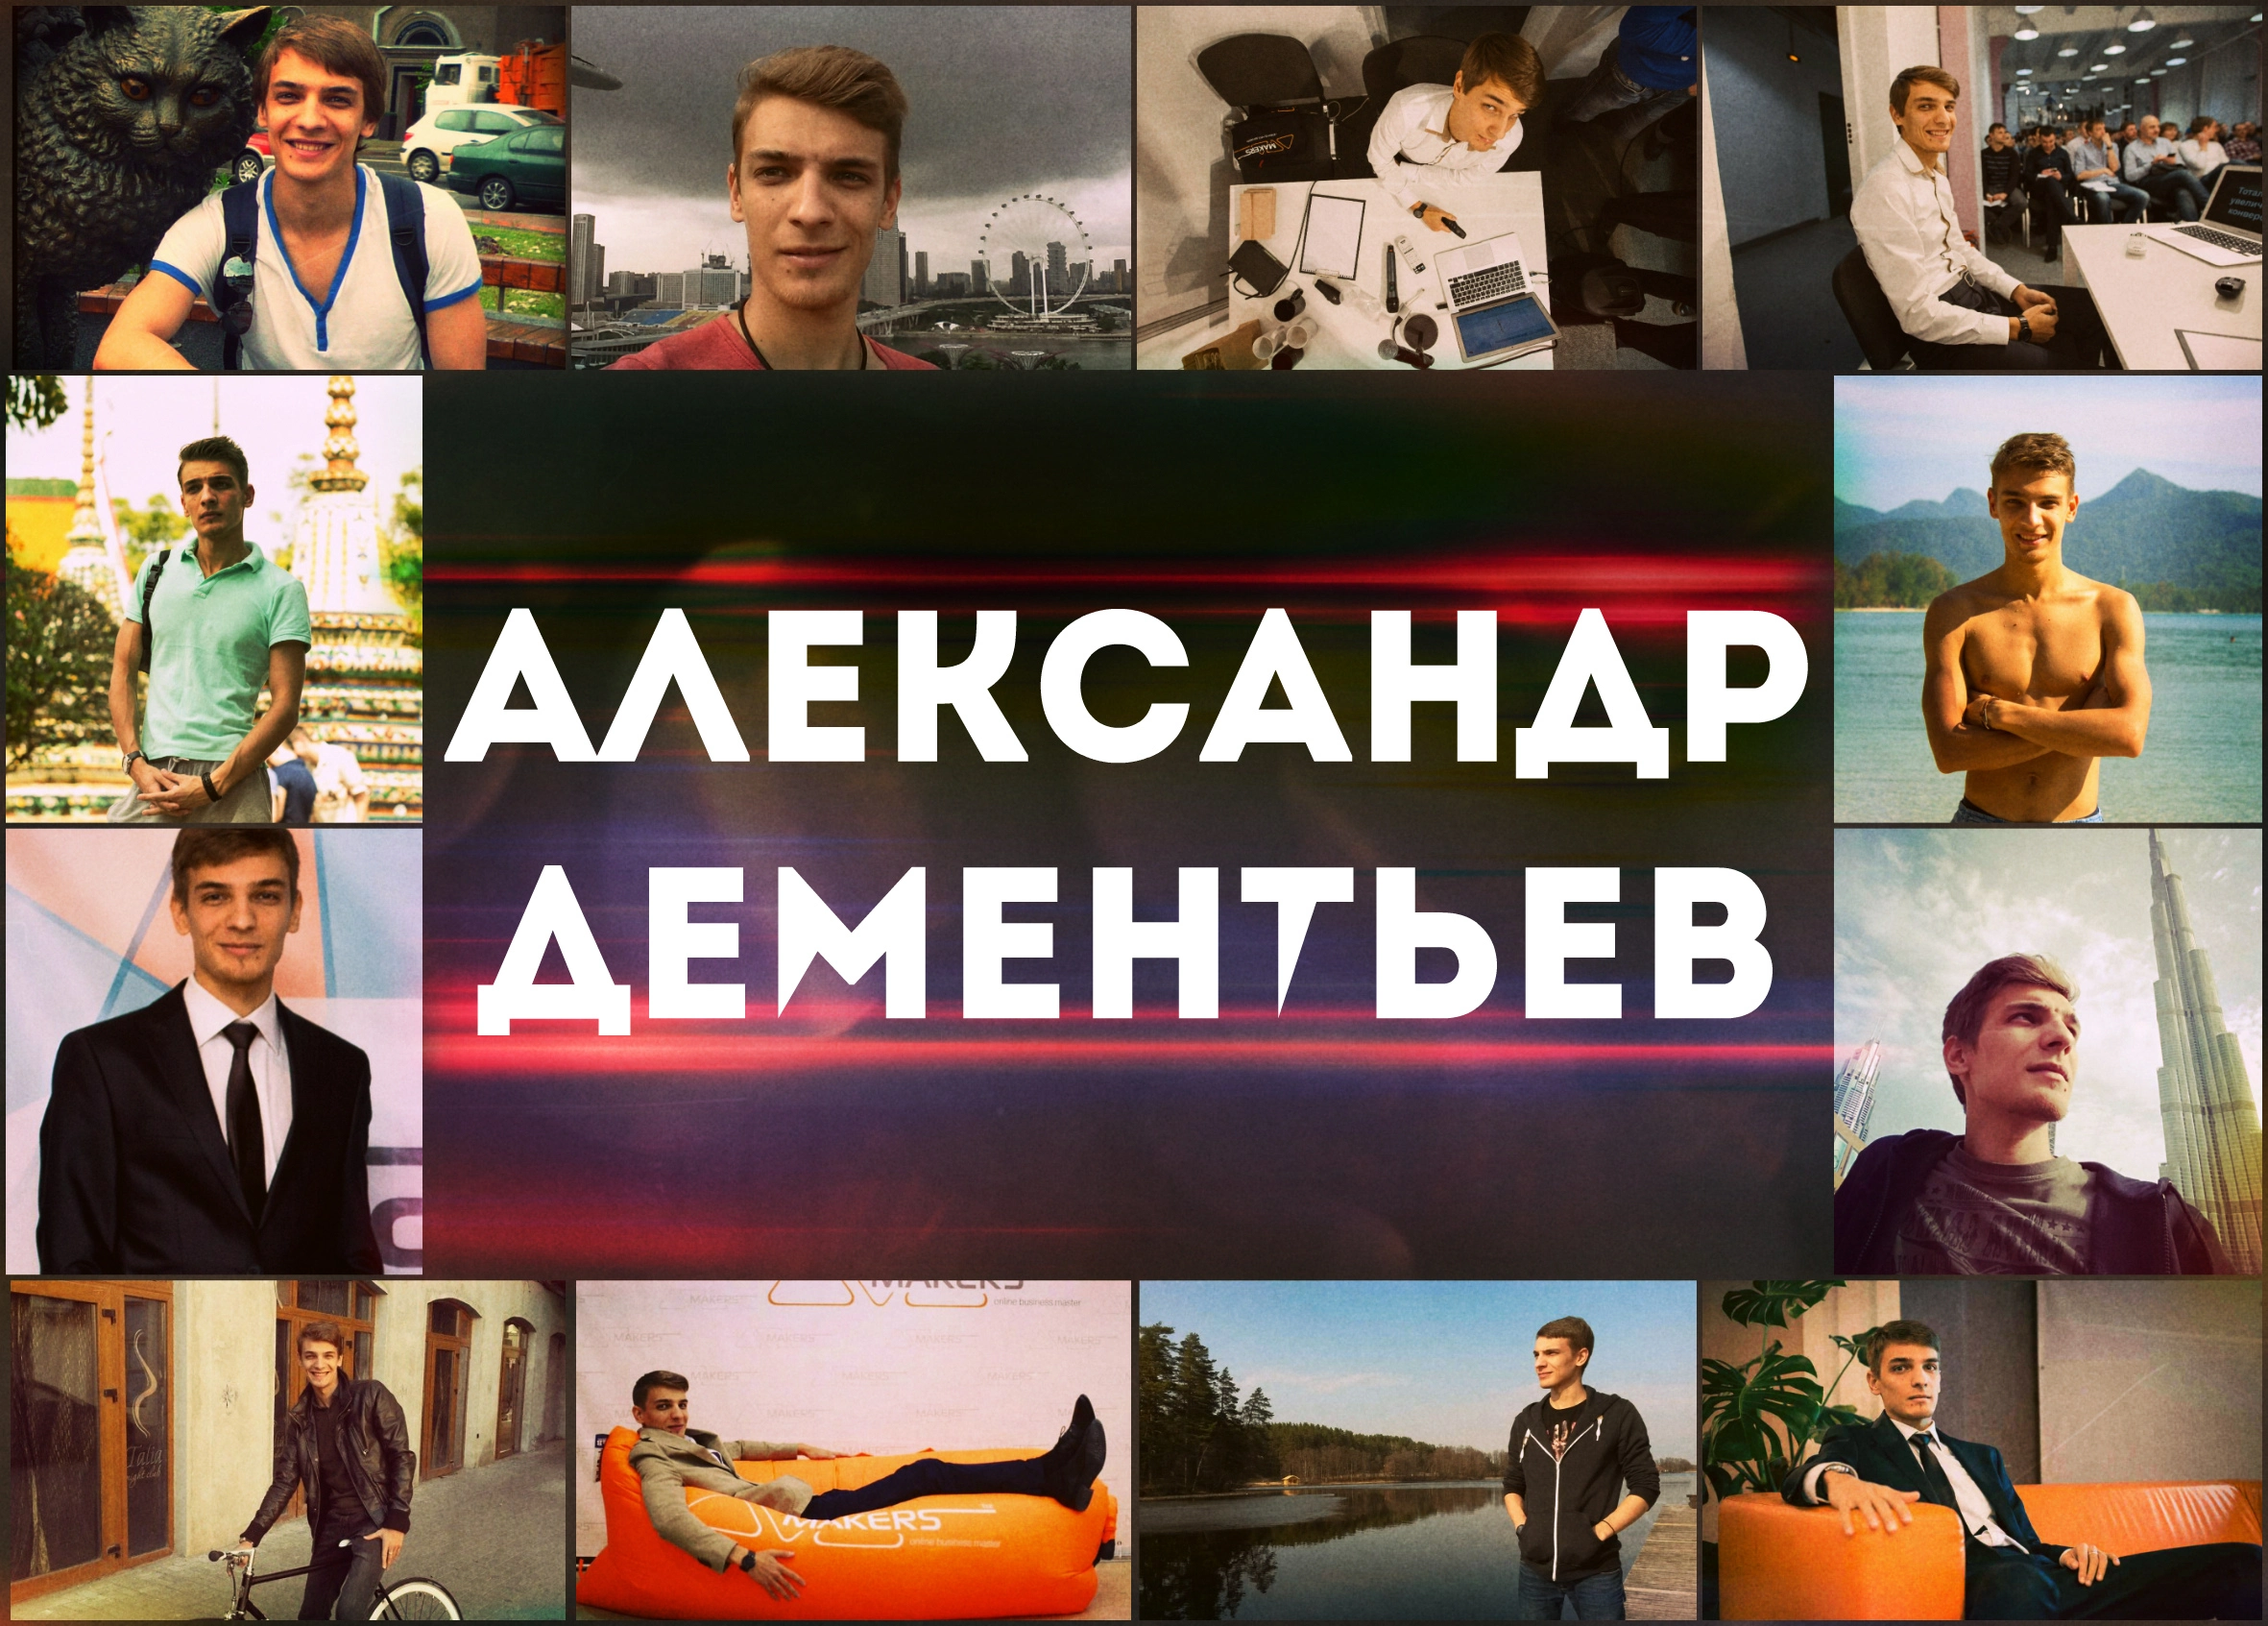 Александр Дементьев - бизнес-тренер и эксперт купонного маркетинга